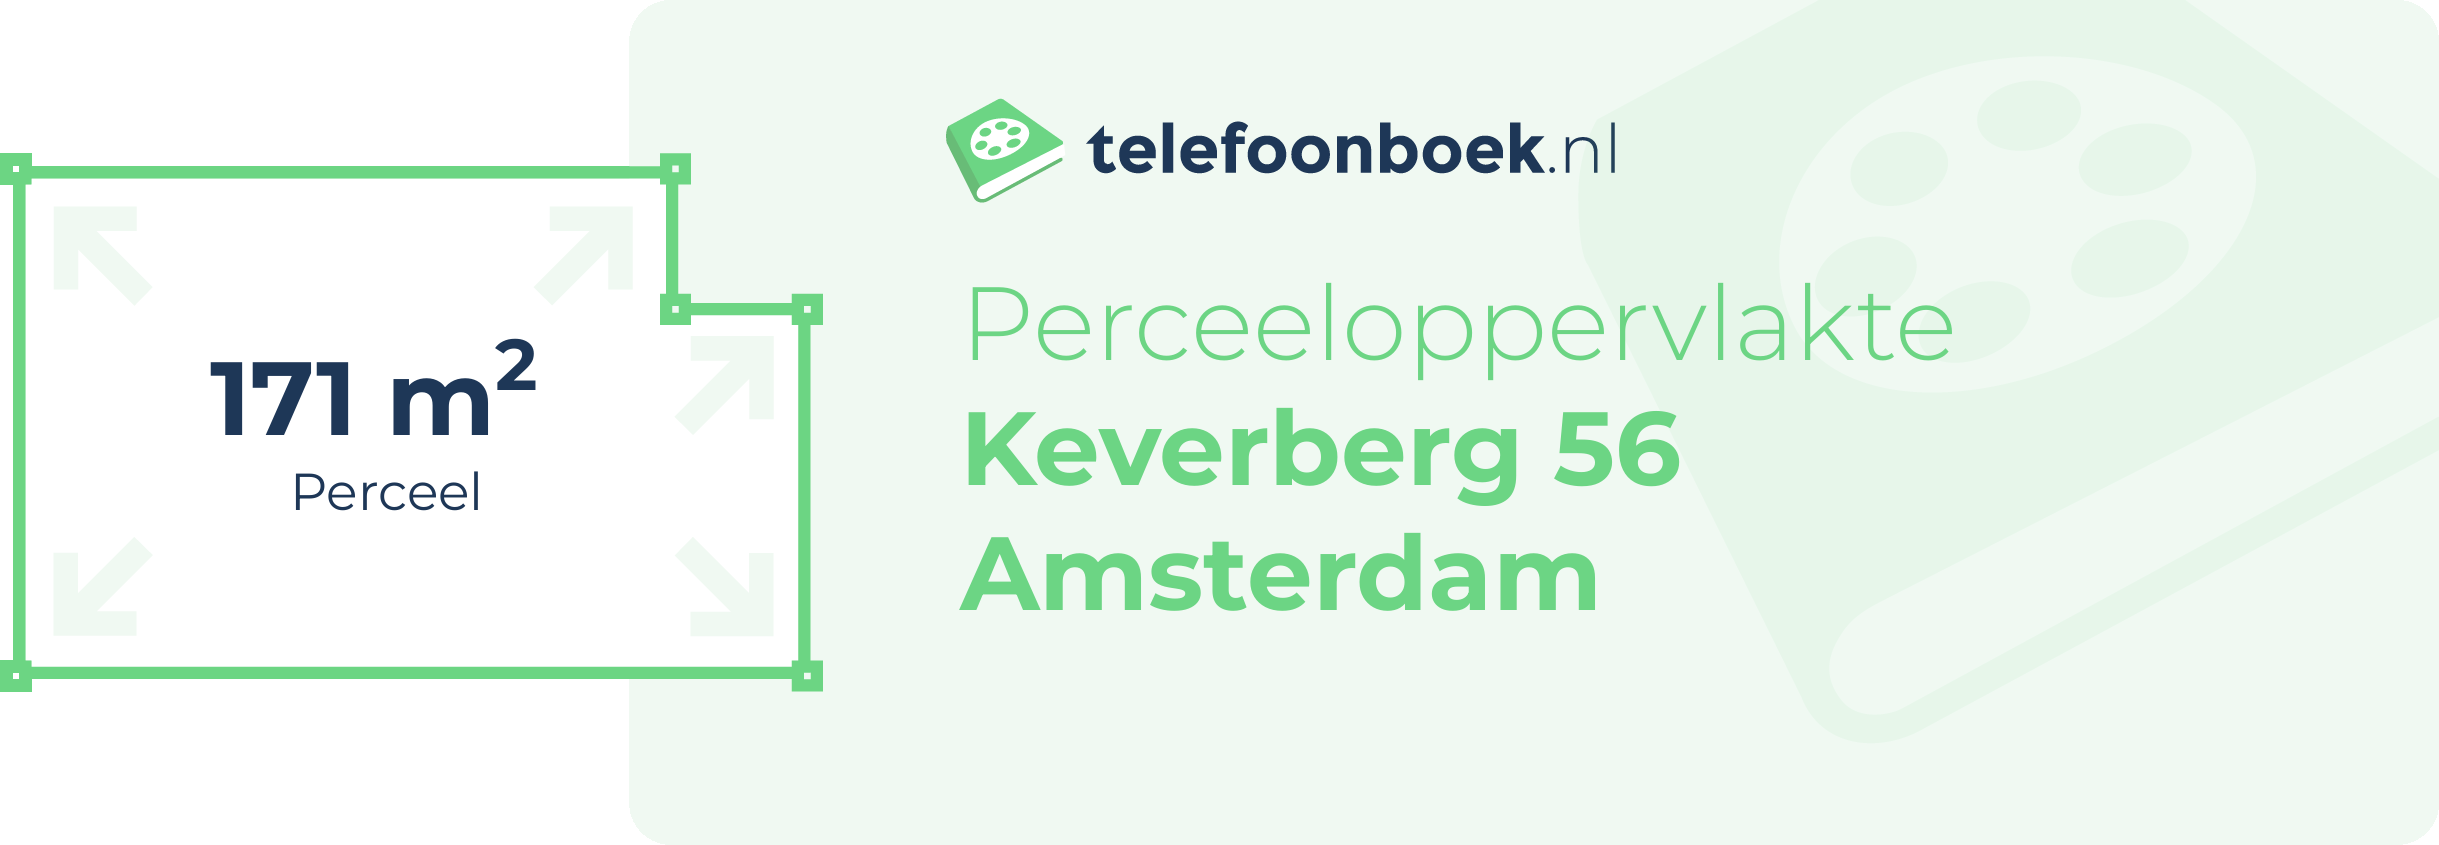 Perceeloppervlakte Keverberg 56 Amsterdam